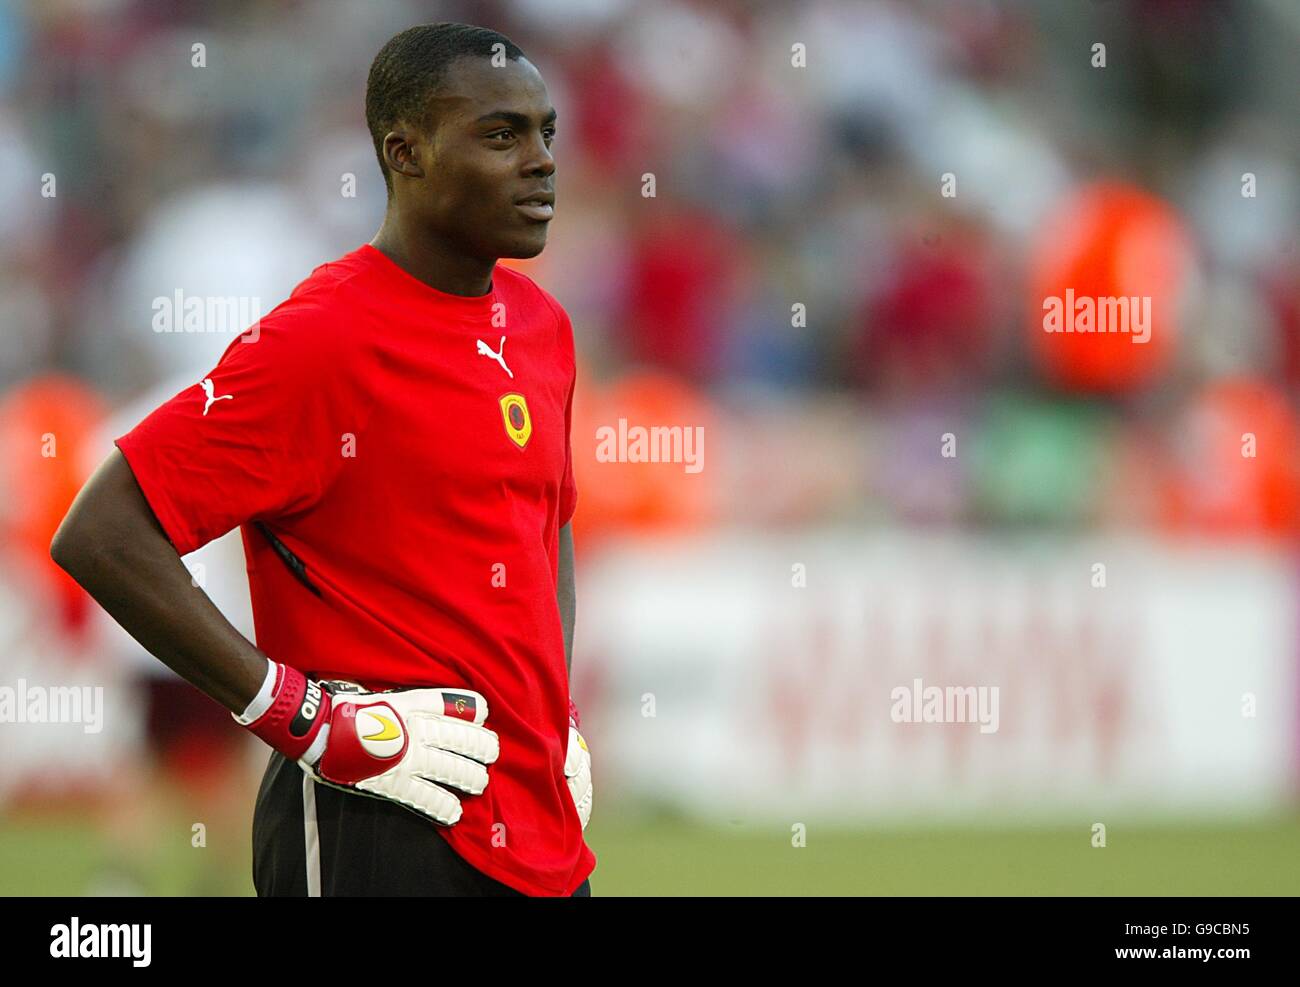 Fußball - FIFA Fußball-Weltmeisterschaft Deutschland 2006 - Gruppe D - Angola gegen Portugal - RheinEnergieStadion. Hipolito Mario, angolanischer Torwart Stockfoto